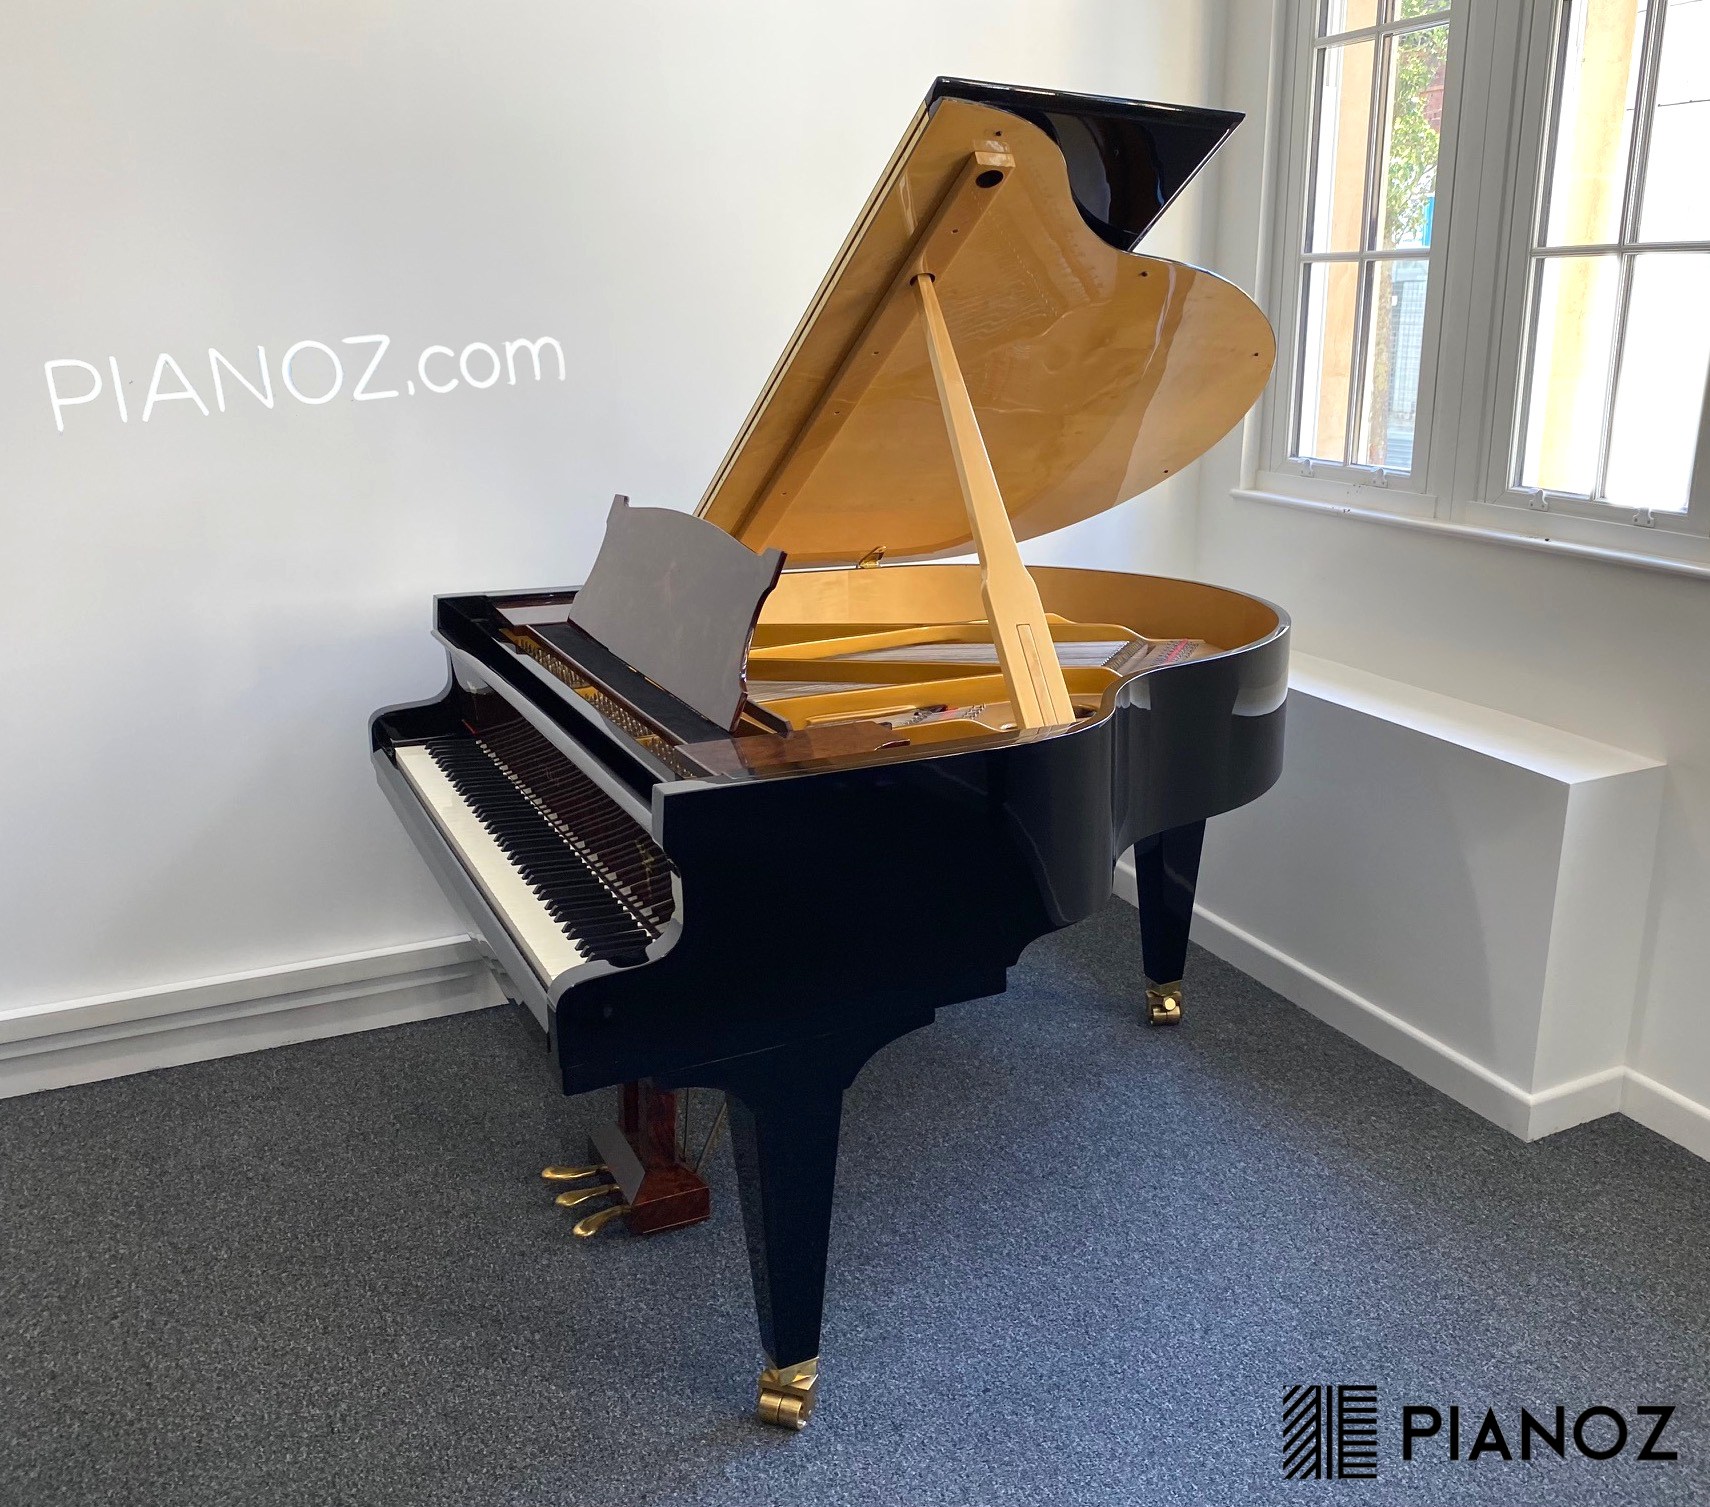 Steingraeber Phoenix 170 Carbon Fibre Soundboard Baby Grand Piano piano for sale in UK